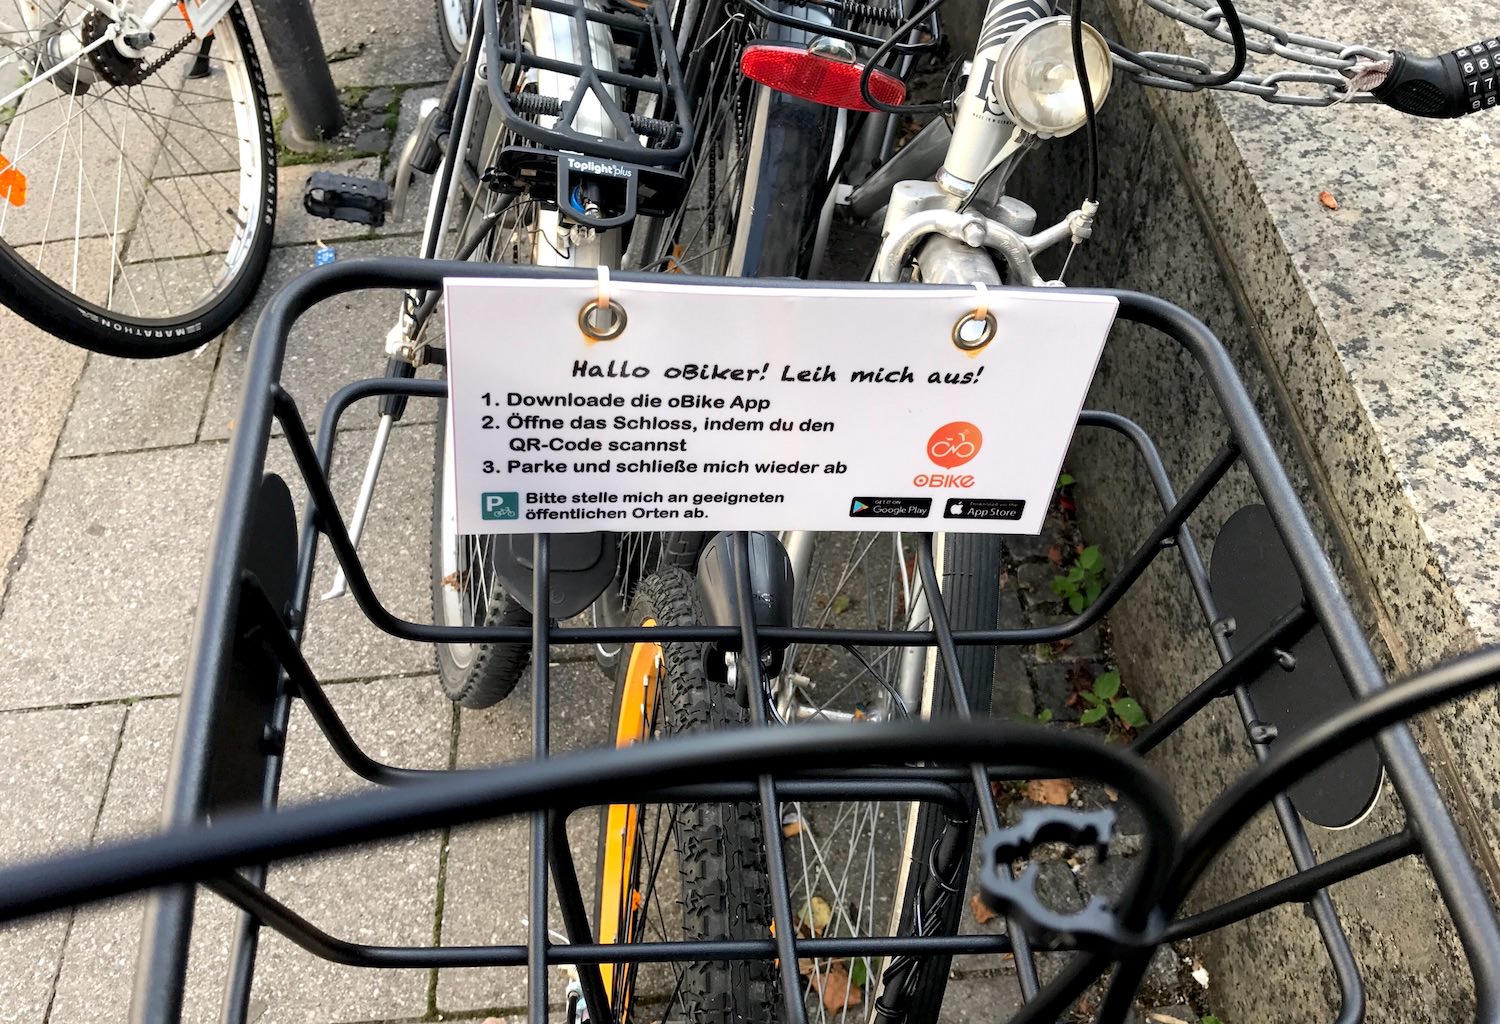 Anleitung zur oBike-Benutzung in München am Fahrradkorb eines oBikes